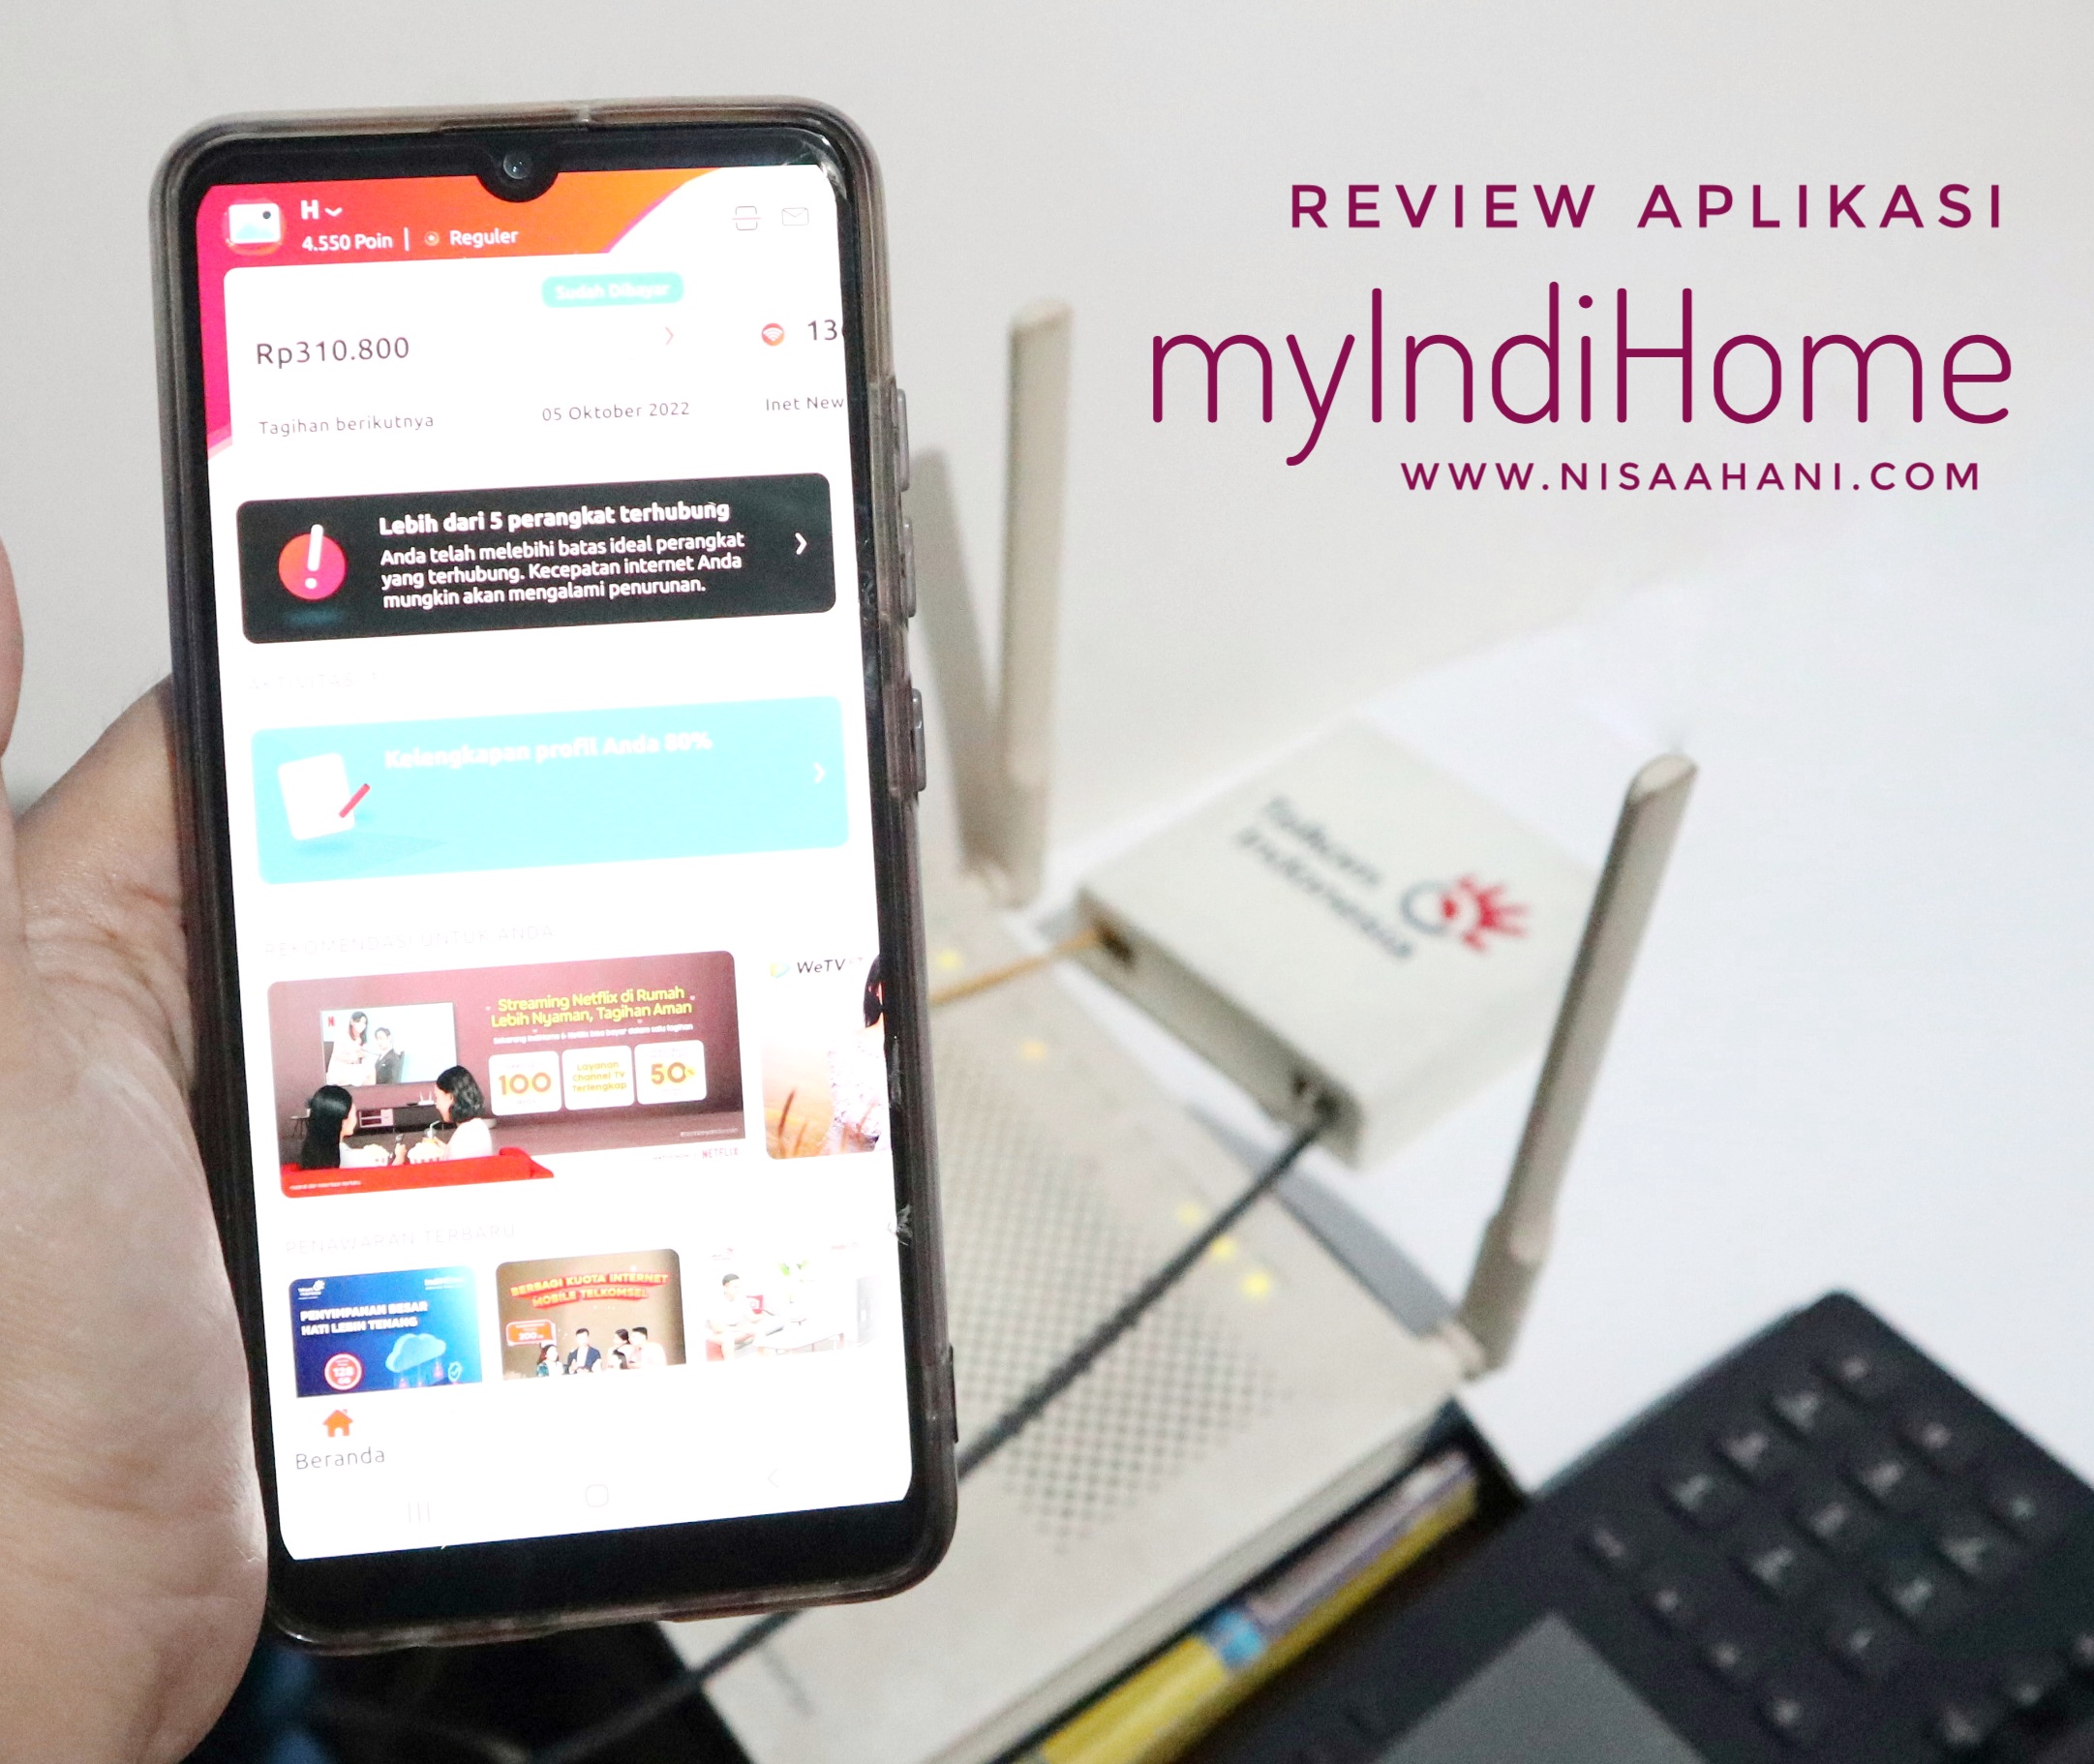 Nisaahani Blogger Yang Suka Sharing Review Sharing Pengalaman Menggunakan Aplikasi Myindihome